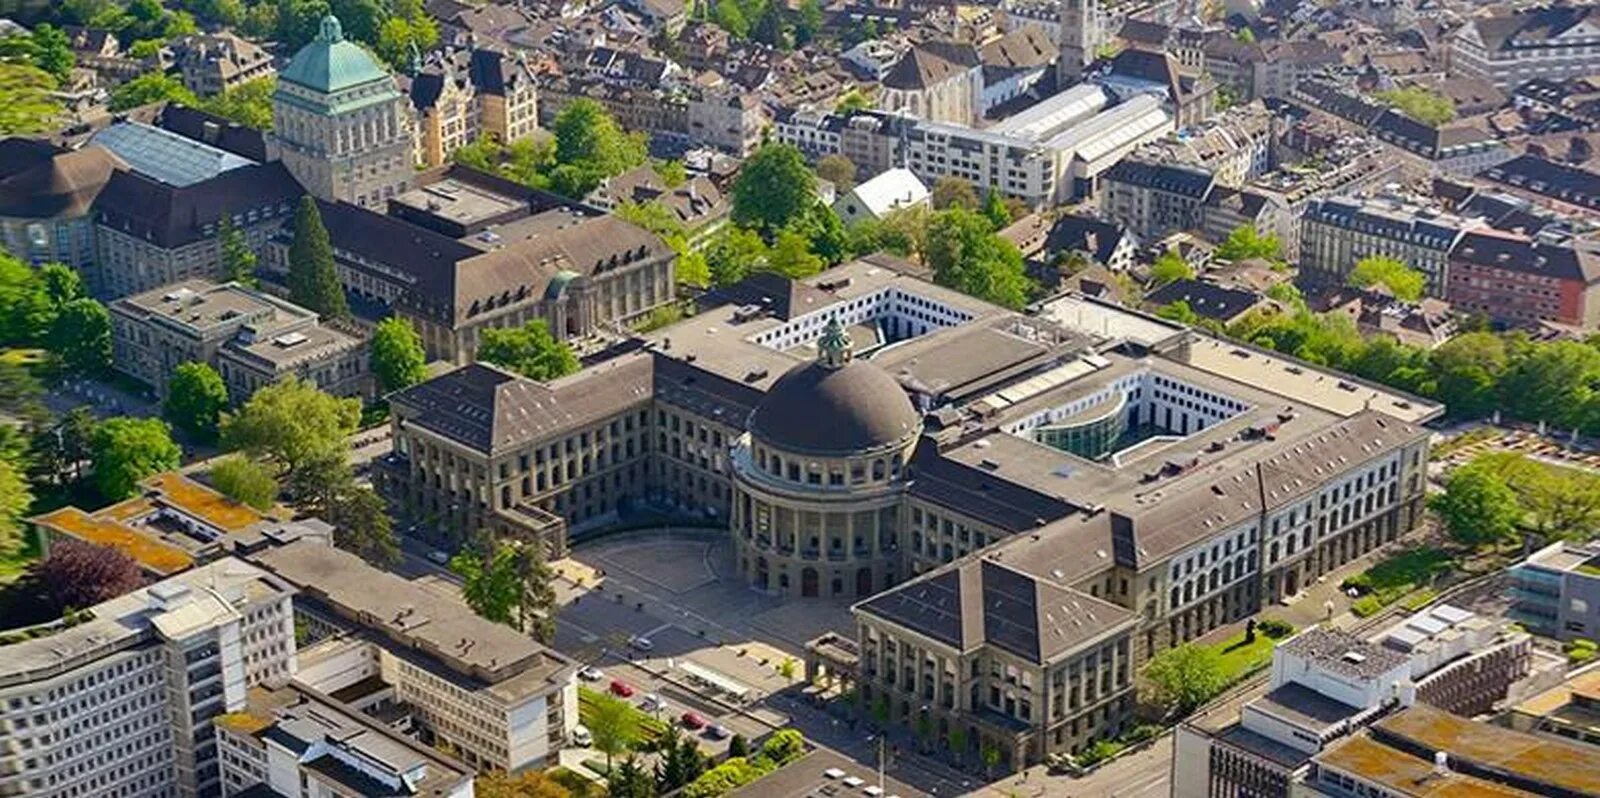 Цюрихский университет Швейцария. Технологический университет Цюриха. Технологический университет Цюриха, Швейцария. Швейцарская Высшая техническая школа Цюриха.